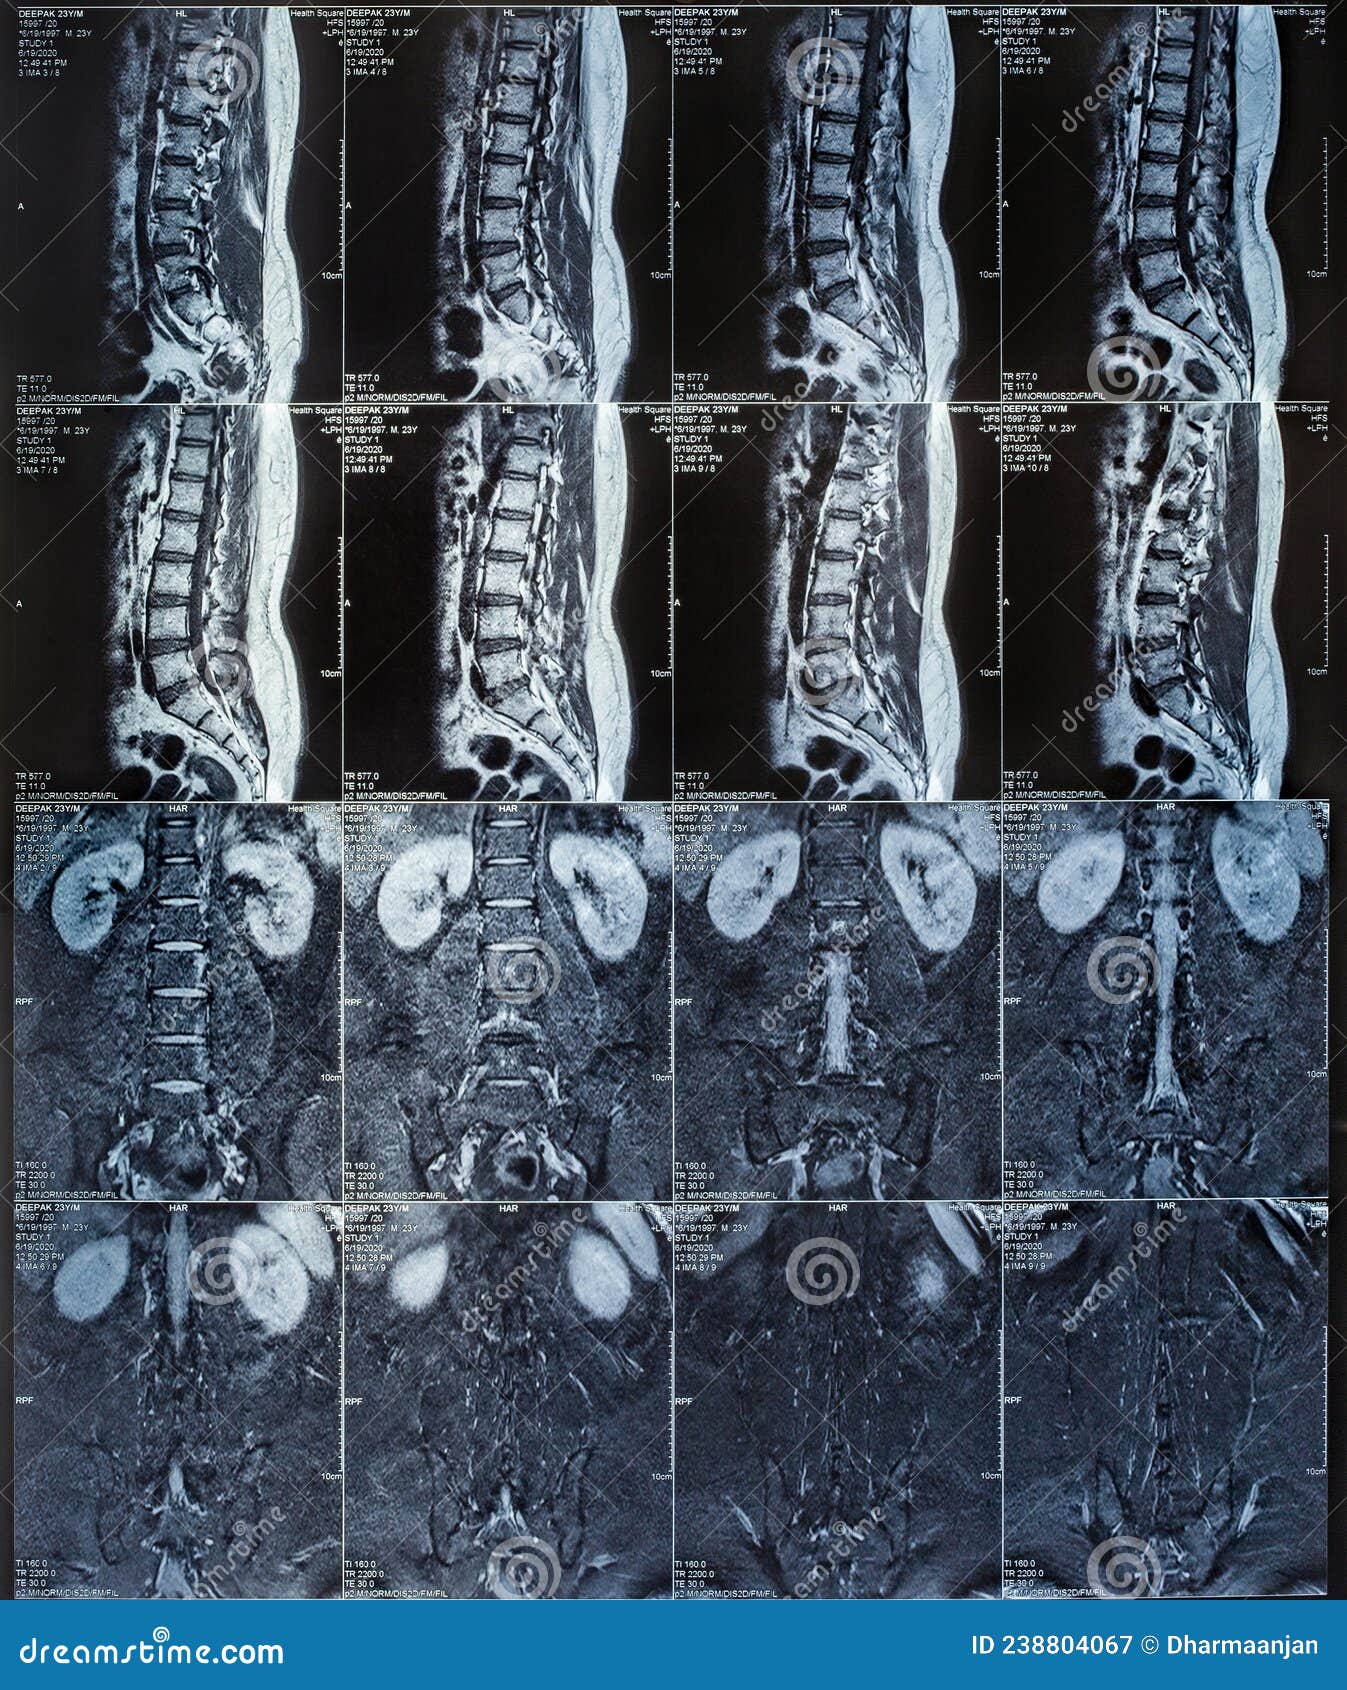 请放射科的老师看看这个腰椎核磁共振的片子 - 医学影像学讨论版 - 爱爱医医学论坛